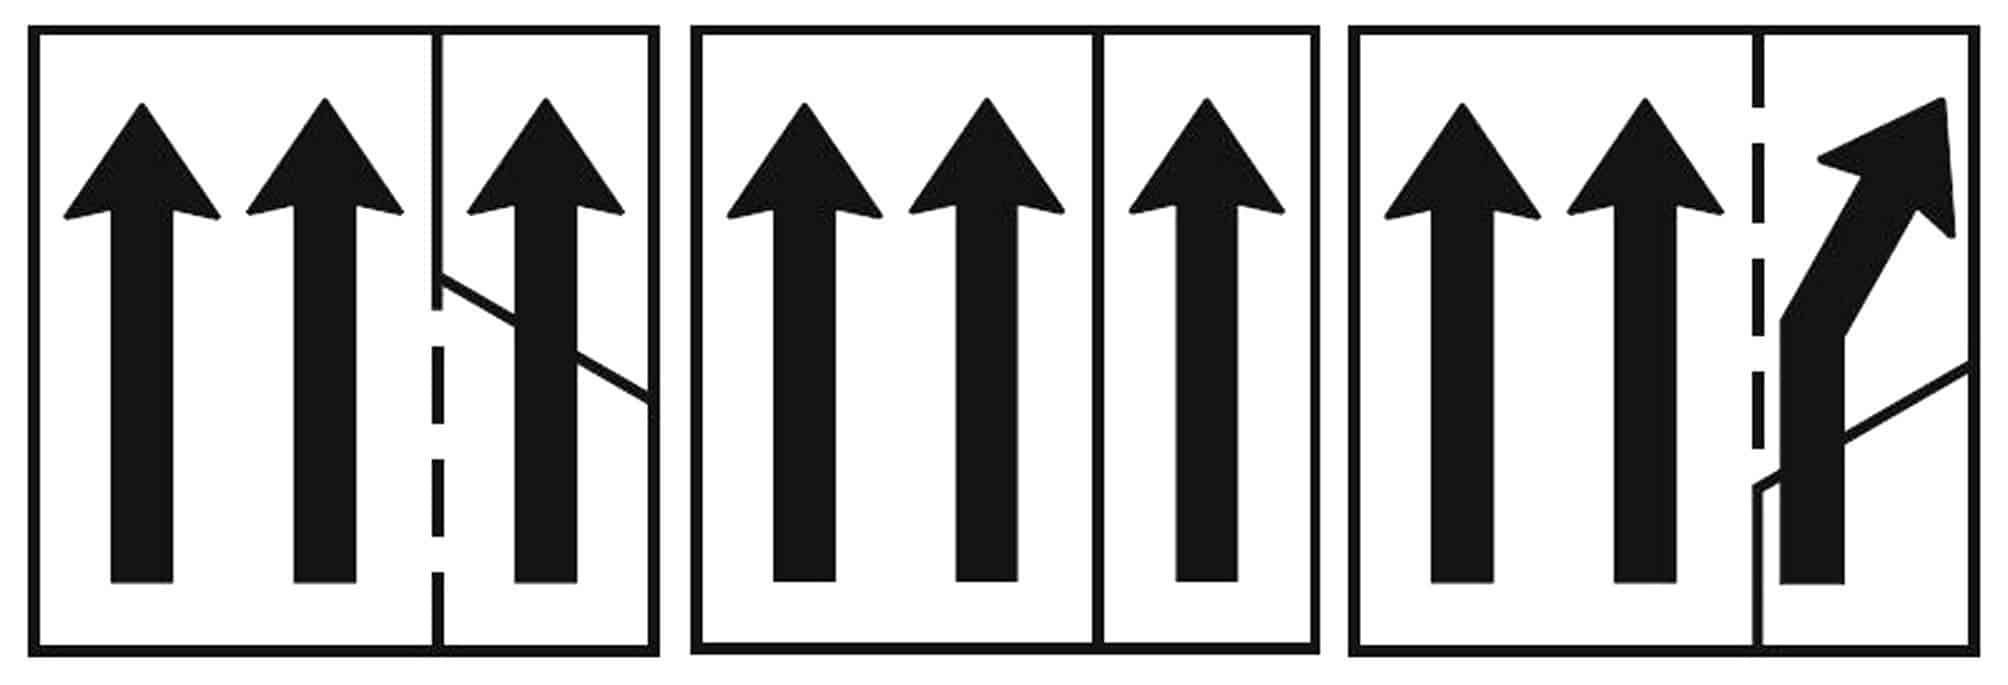 Il segnale di uso corsie (Fig. 4.77.2) utilizzato per la gestione della corsia di emergenza